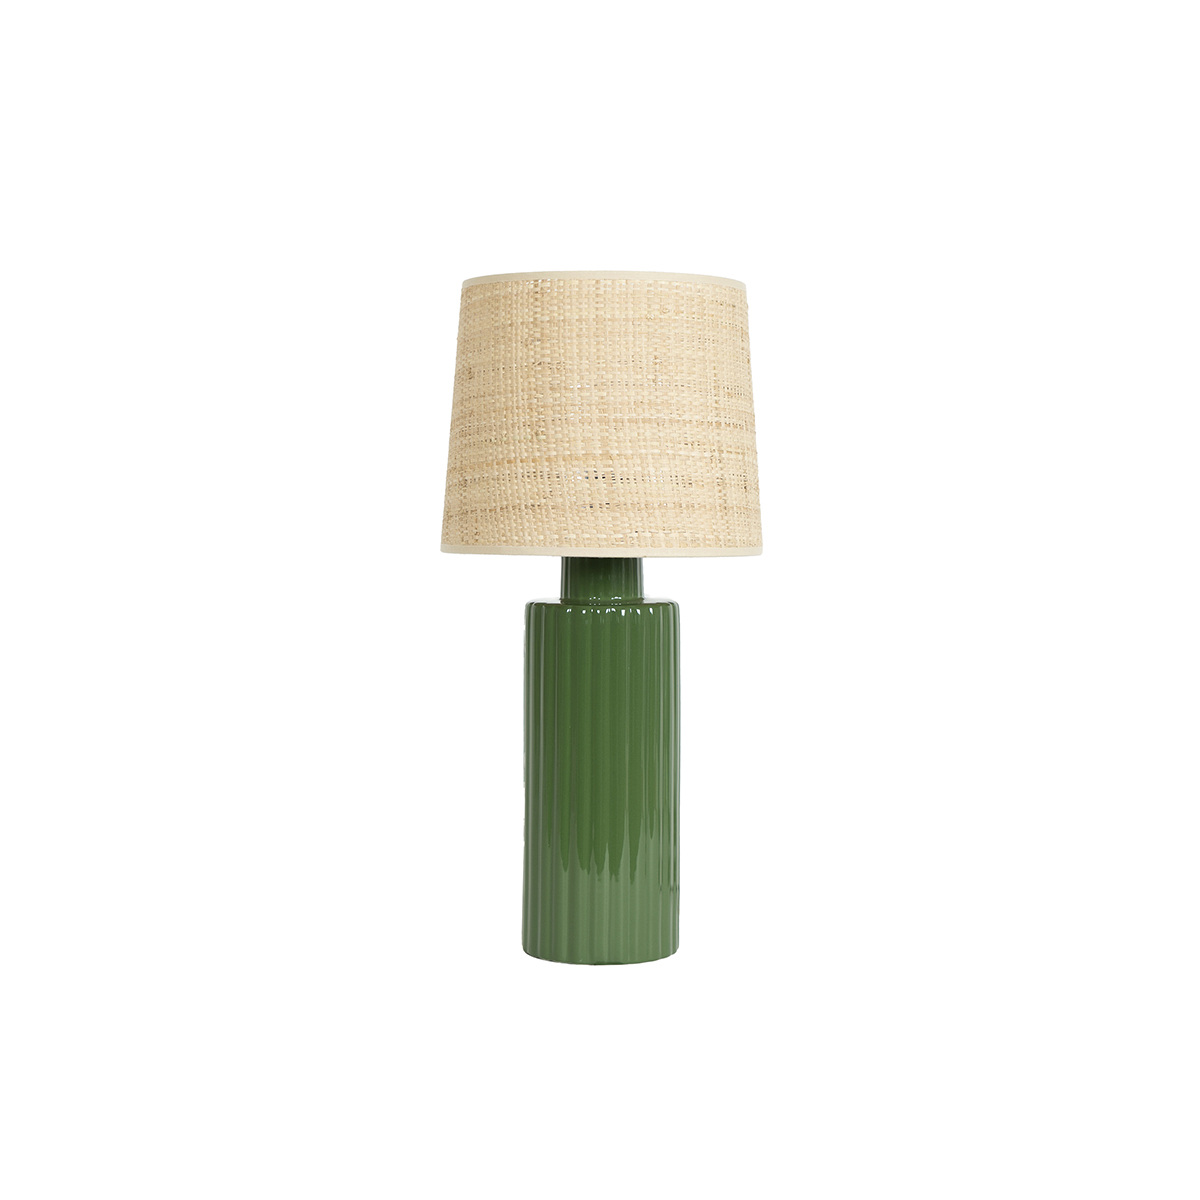 Table Lamp Portofino, Green - H46 cm - Ceramic / Cotton shade - image 1